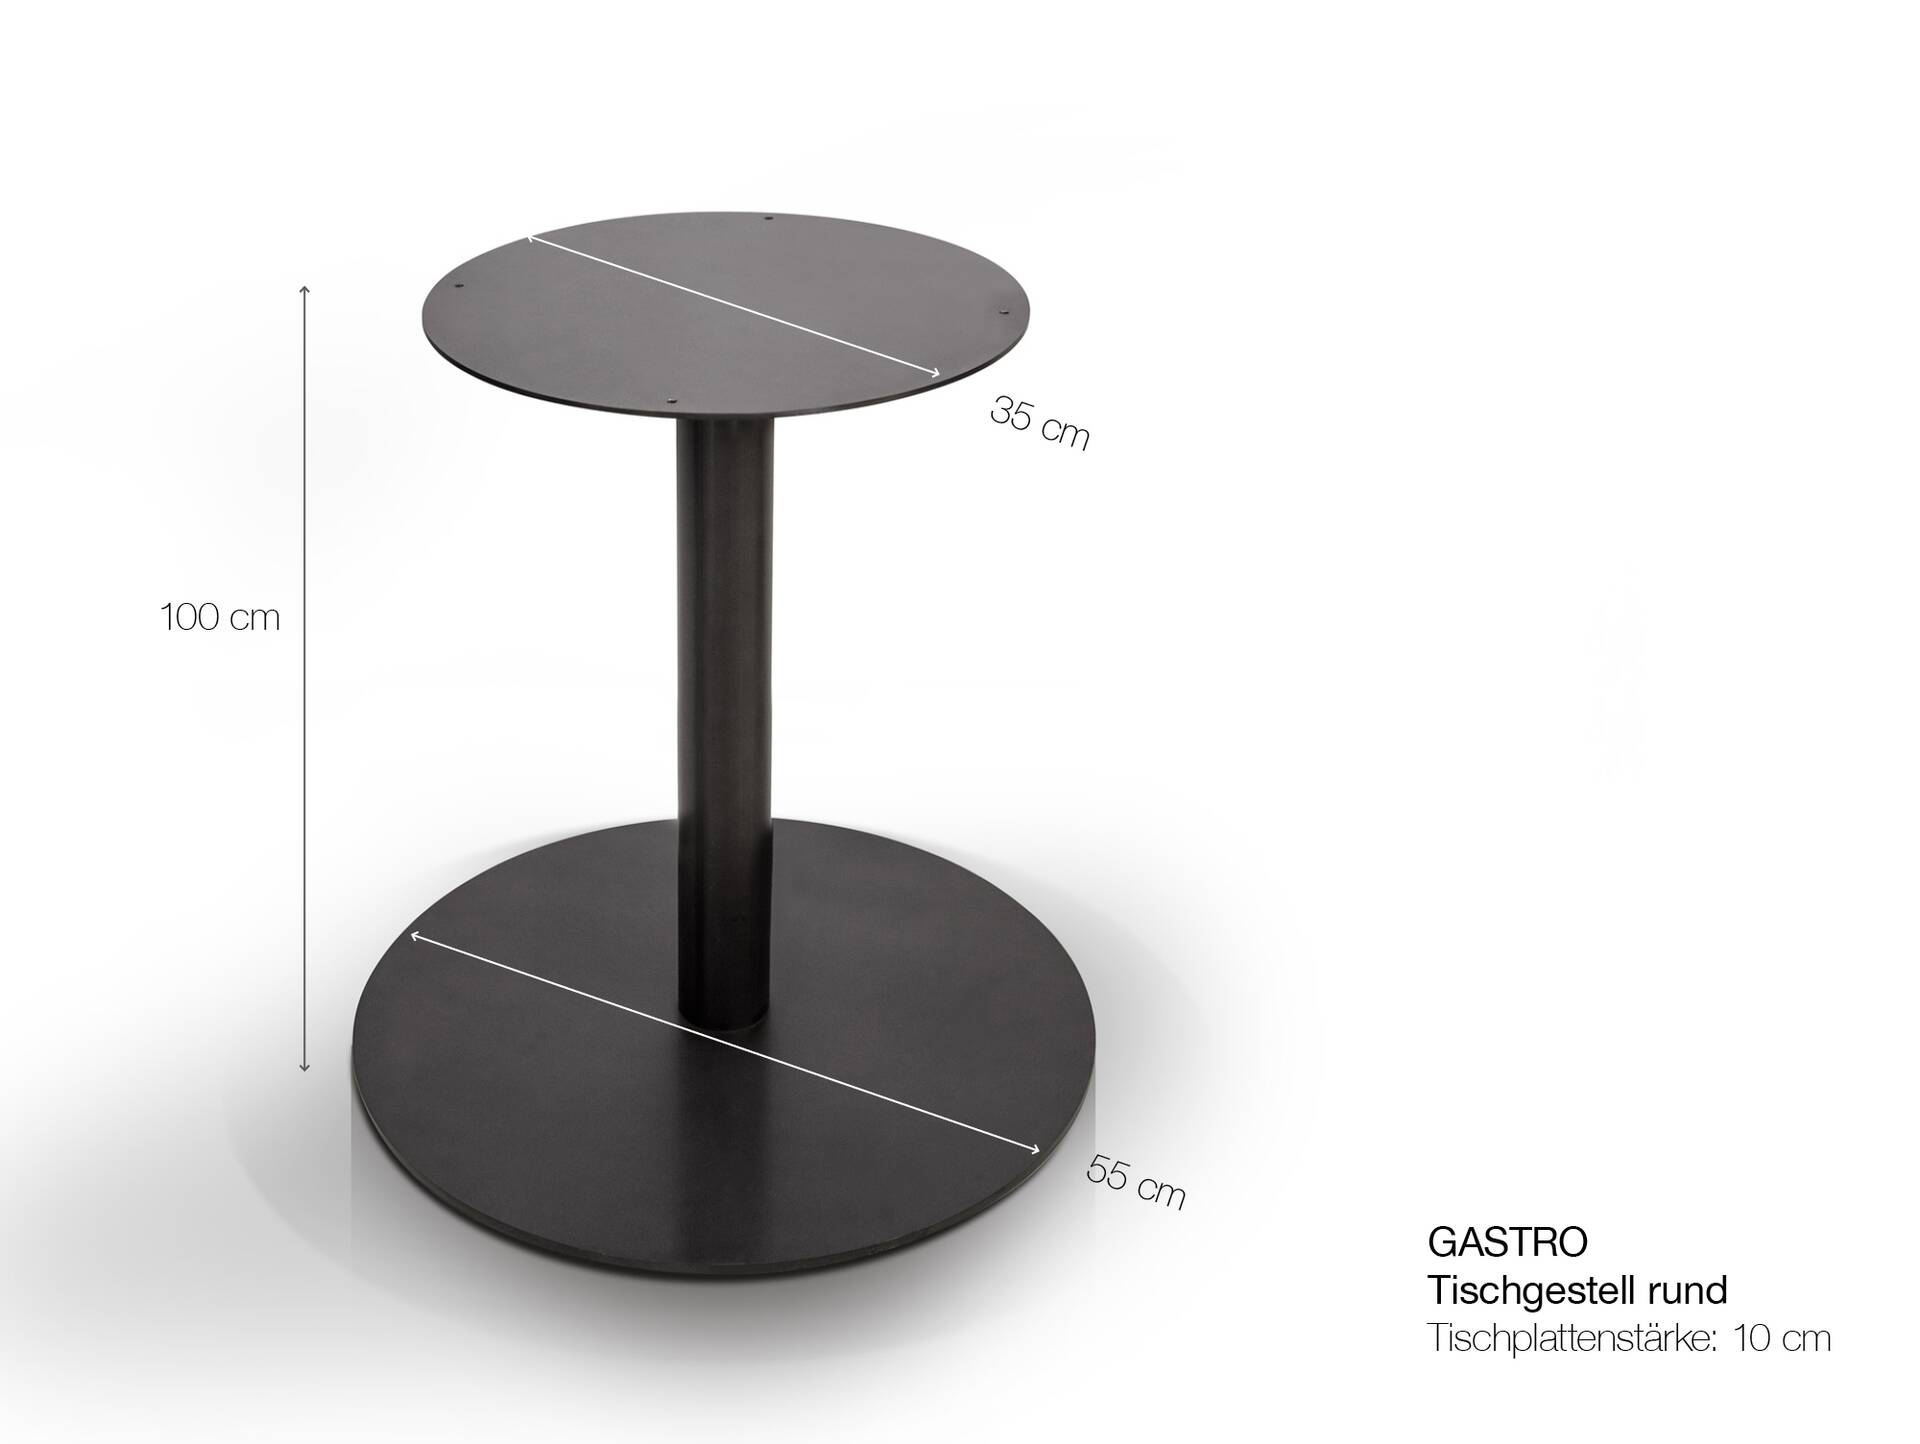 Tischgestell für GASTRO Bartisch rund, Material Stahl, schwarz 